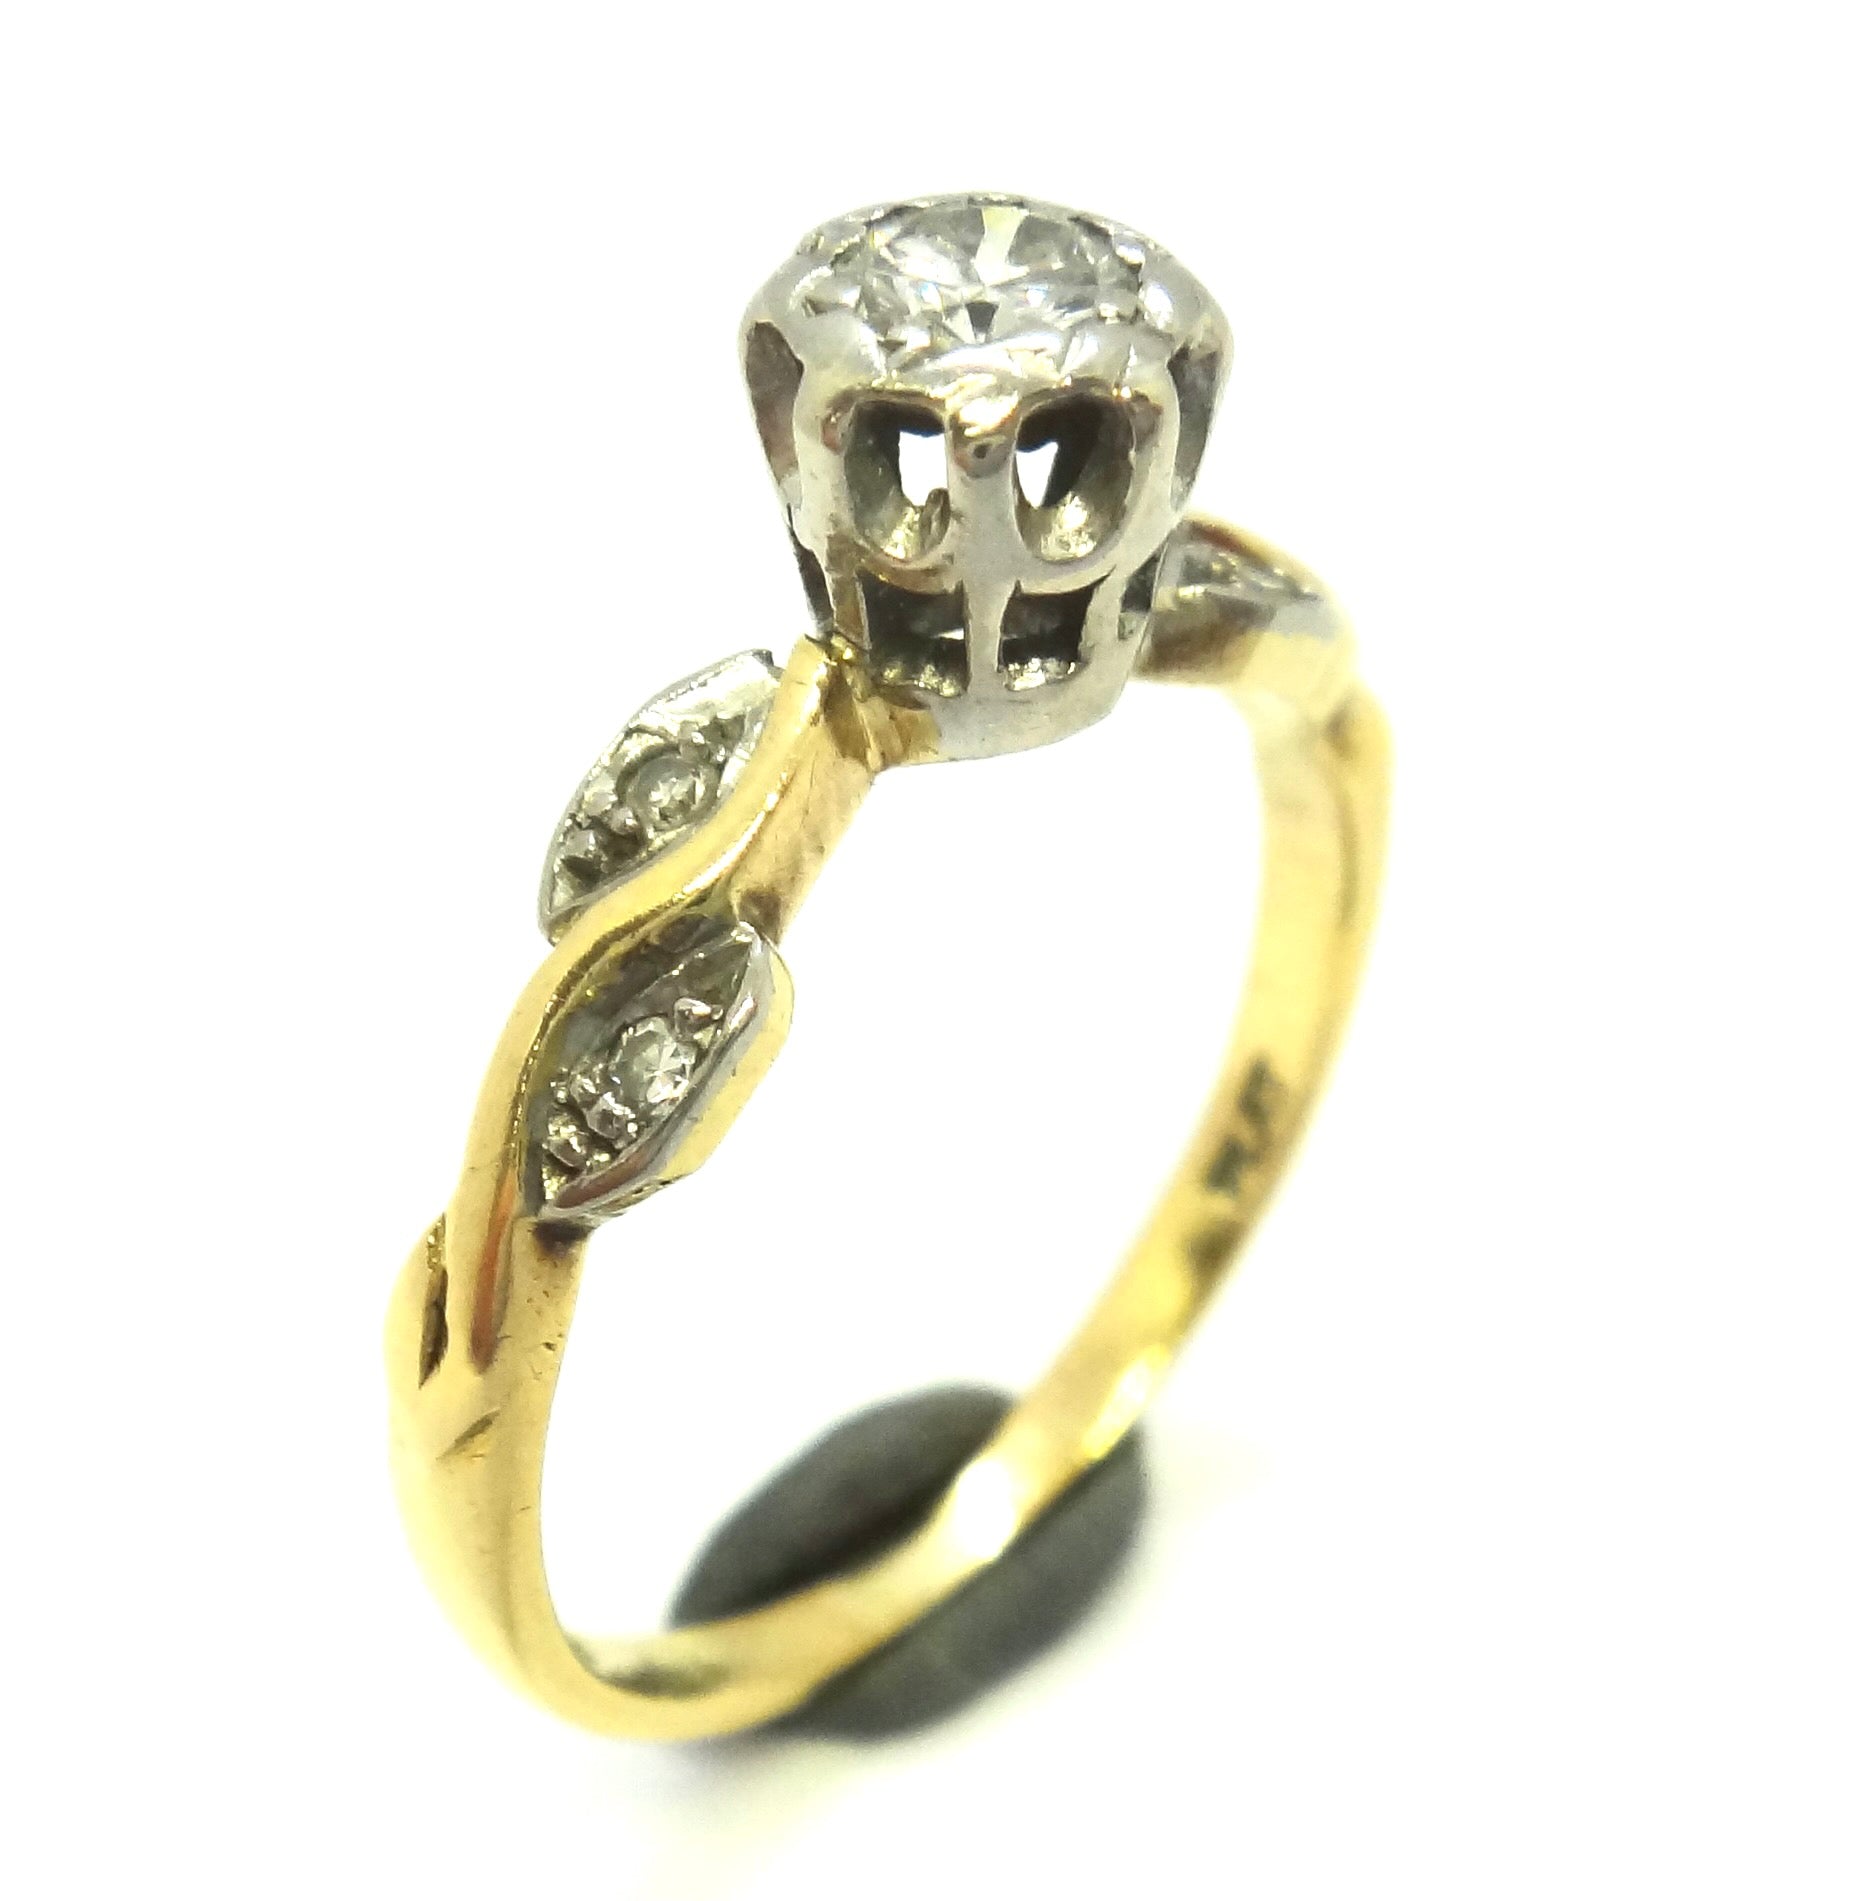 ANTIQUE Platinum, 18ct Yellow GOLD & Diamond Ring